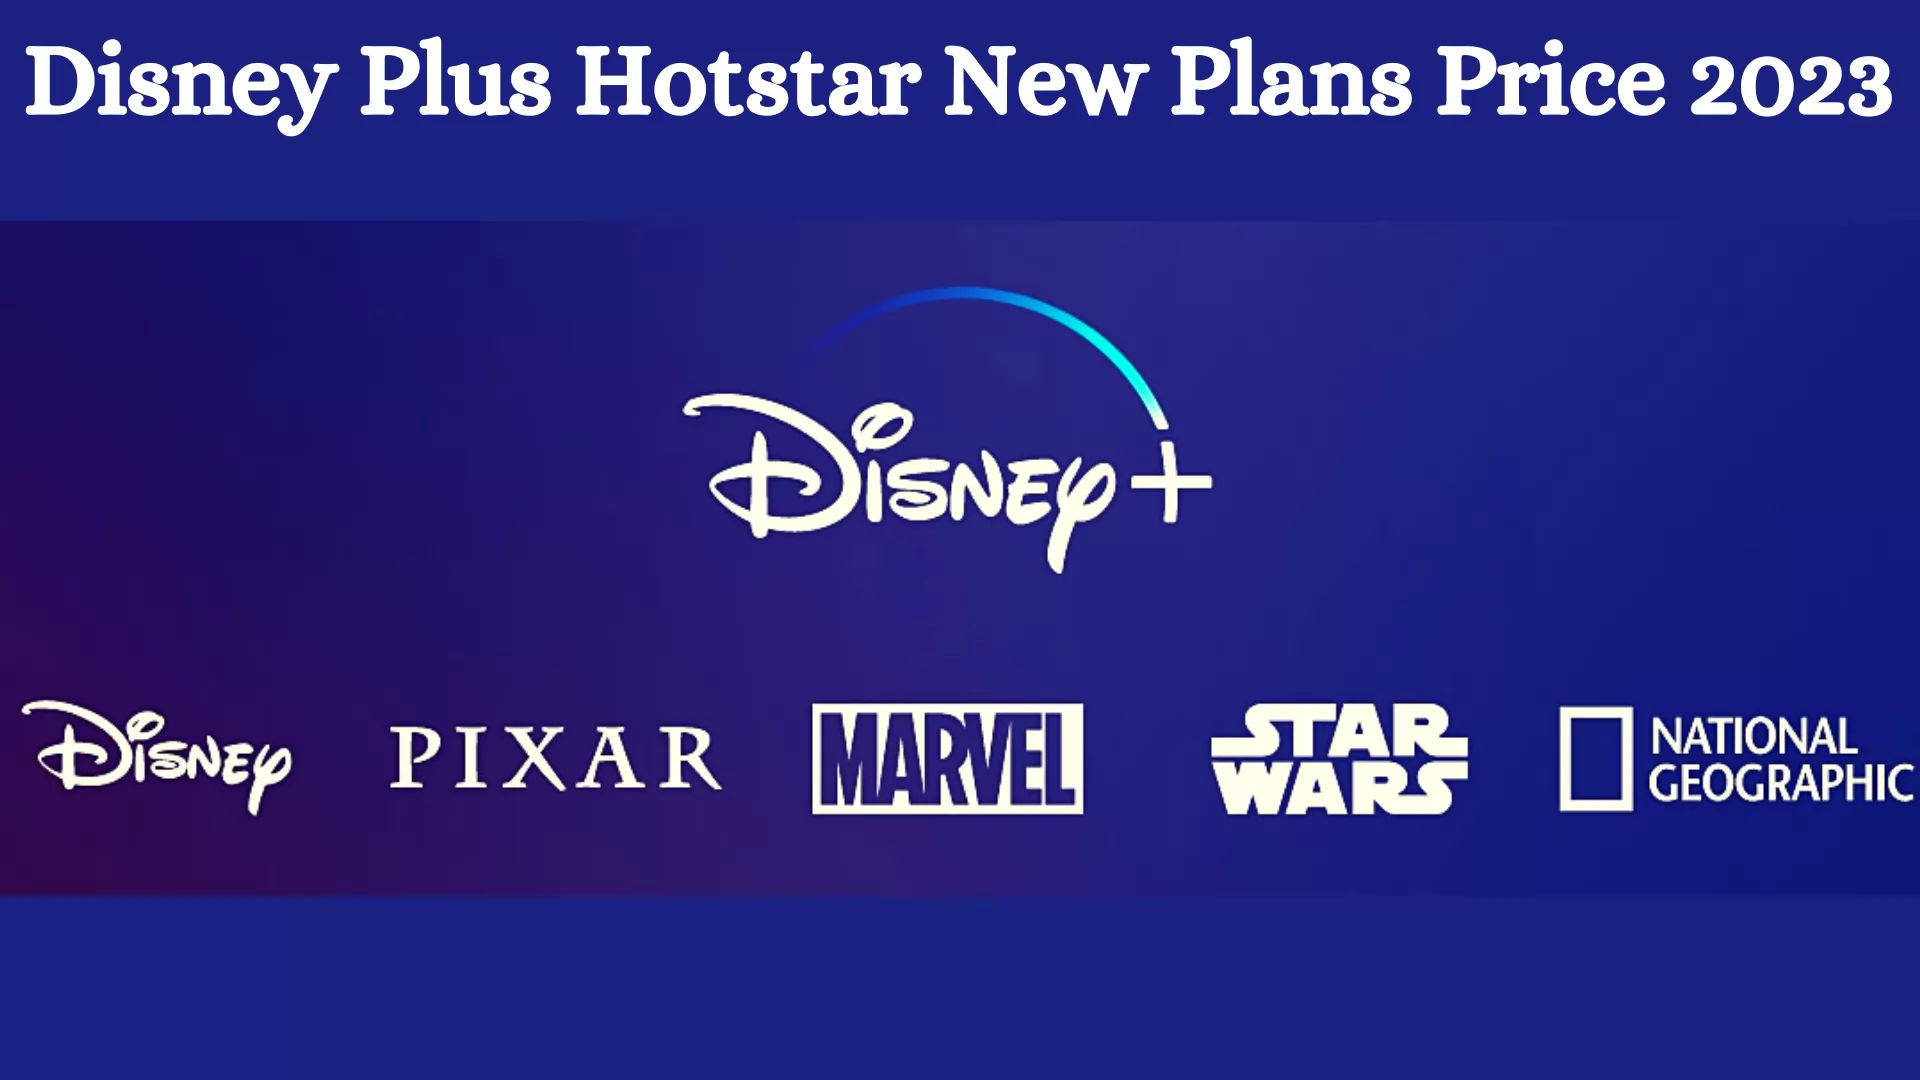 Disney Plus Hotstar New Plans Price 2023